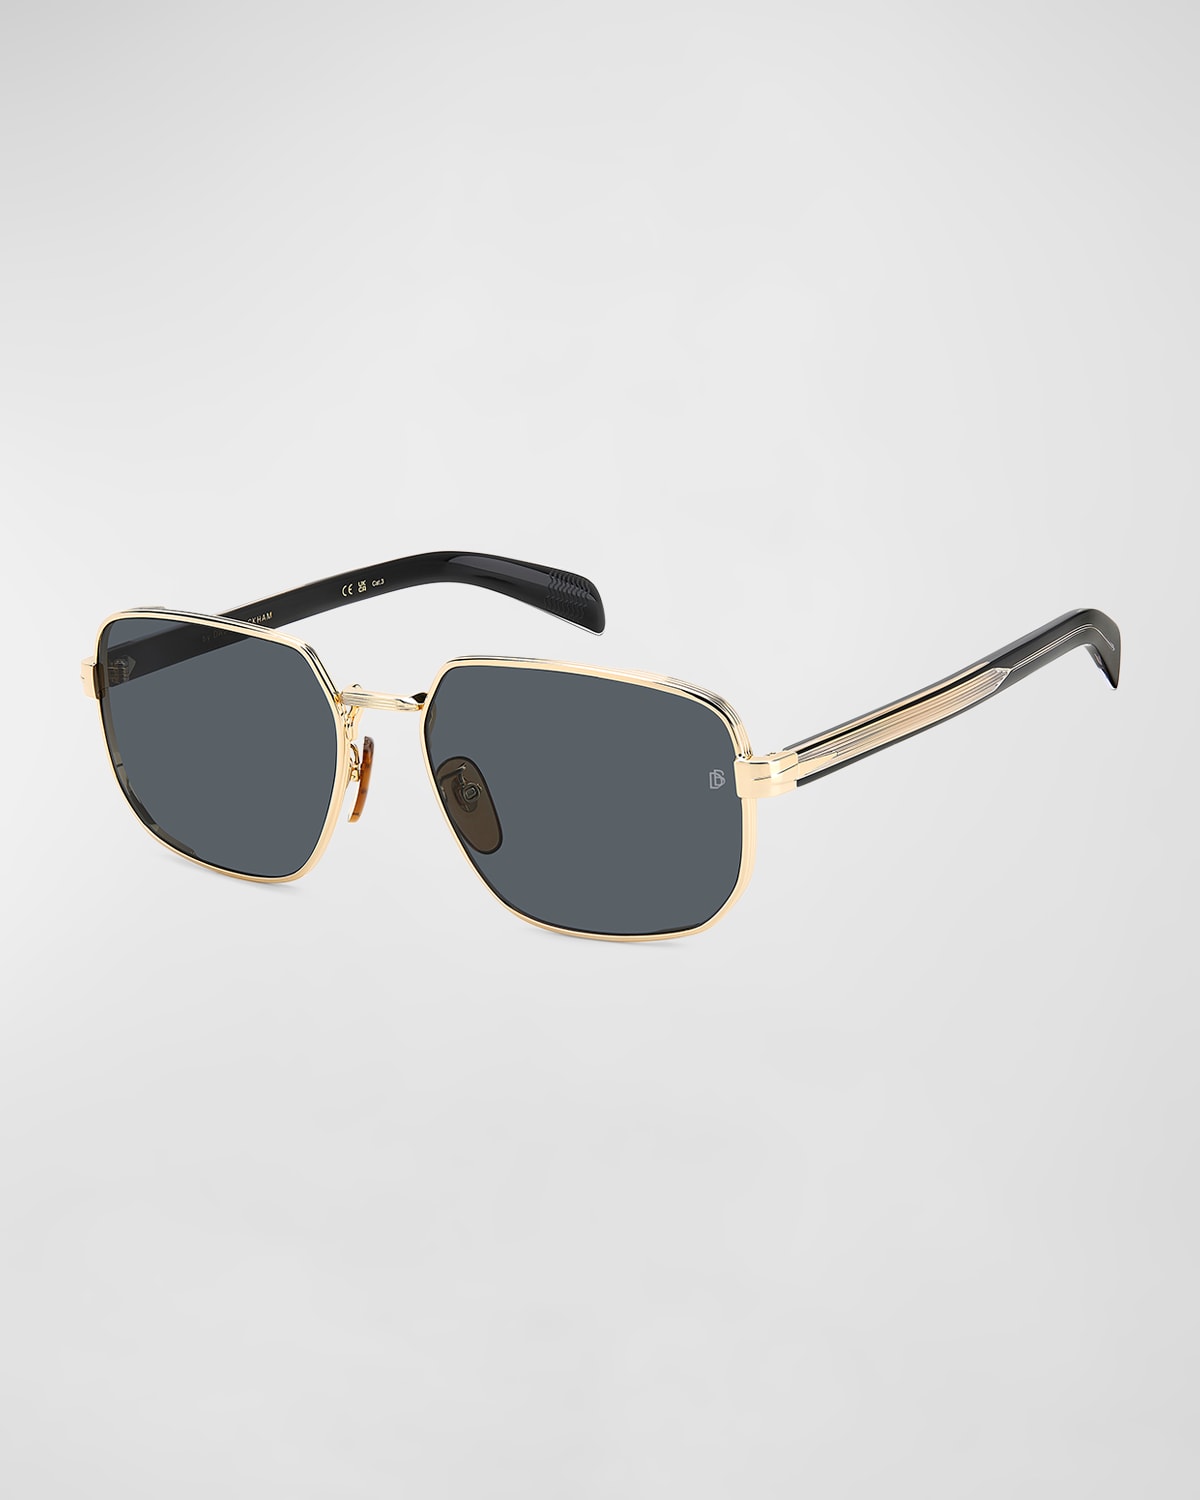 Men's Stainless Steel Rectangle Sunglasses